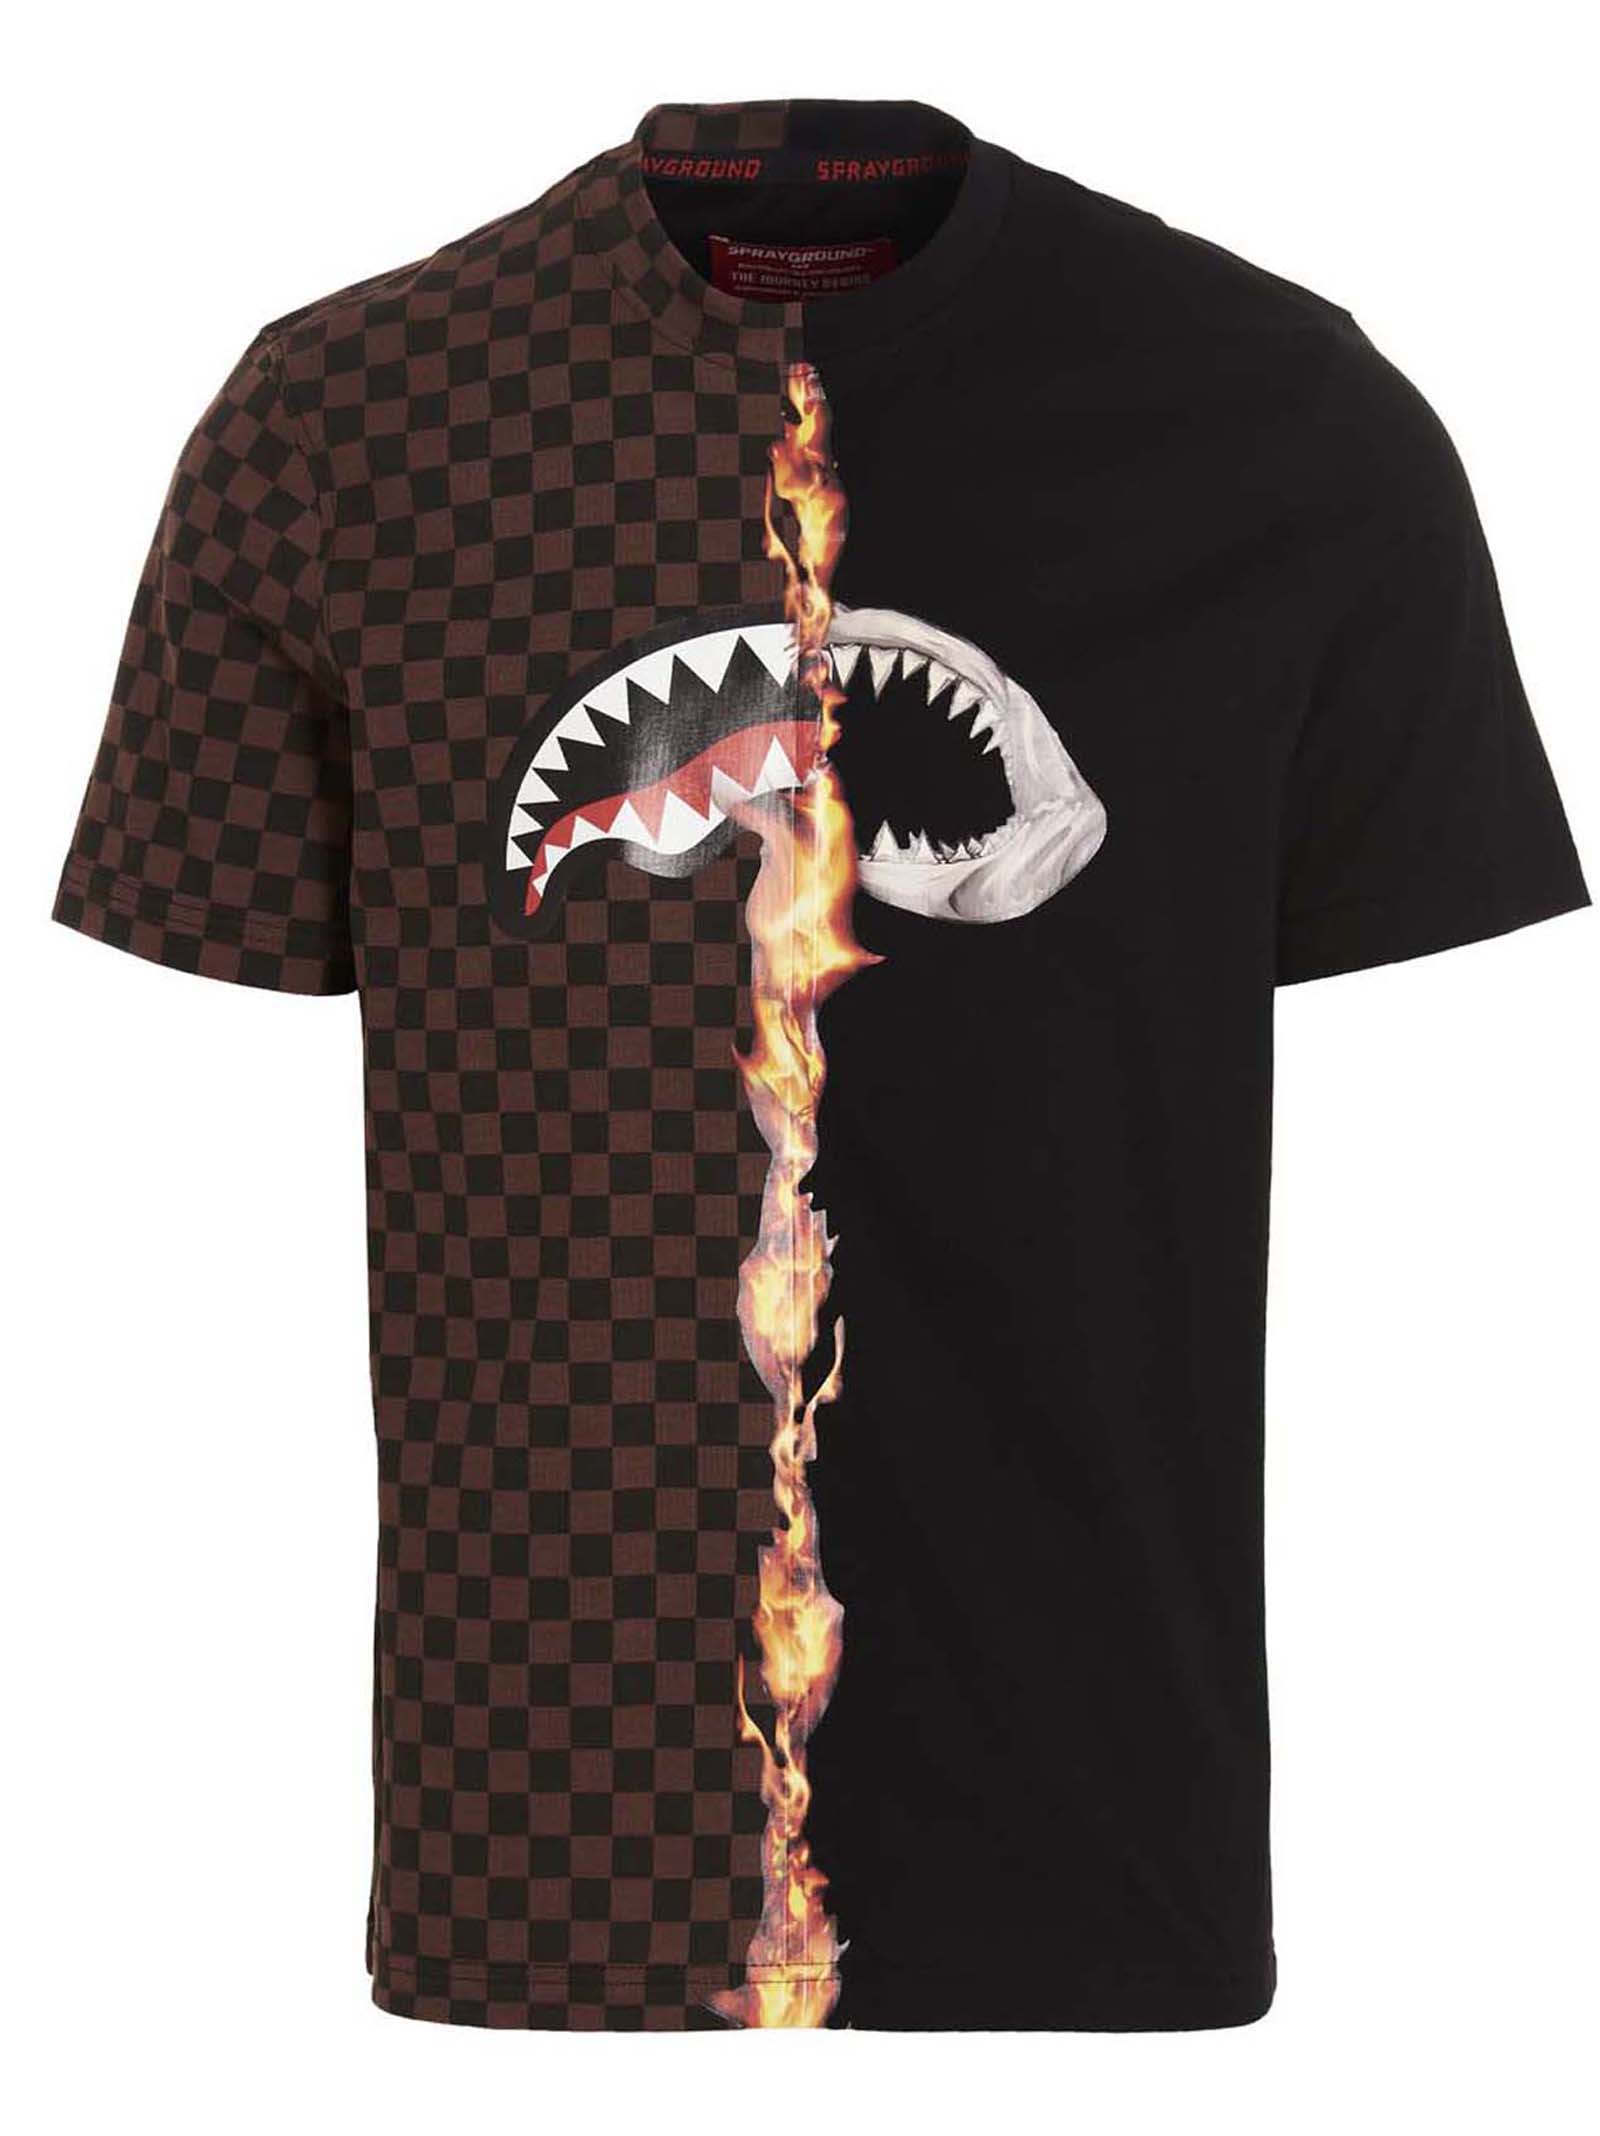 Sprayground burnt Sharks In Paris T-shirt